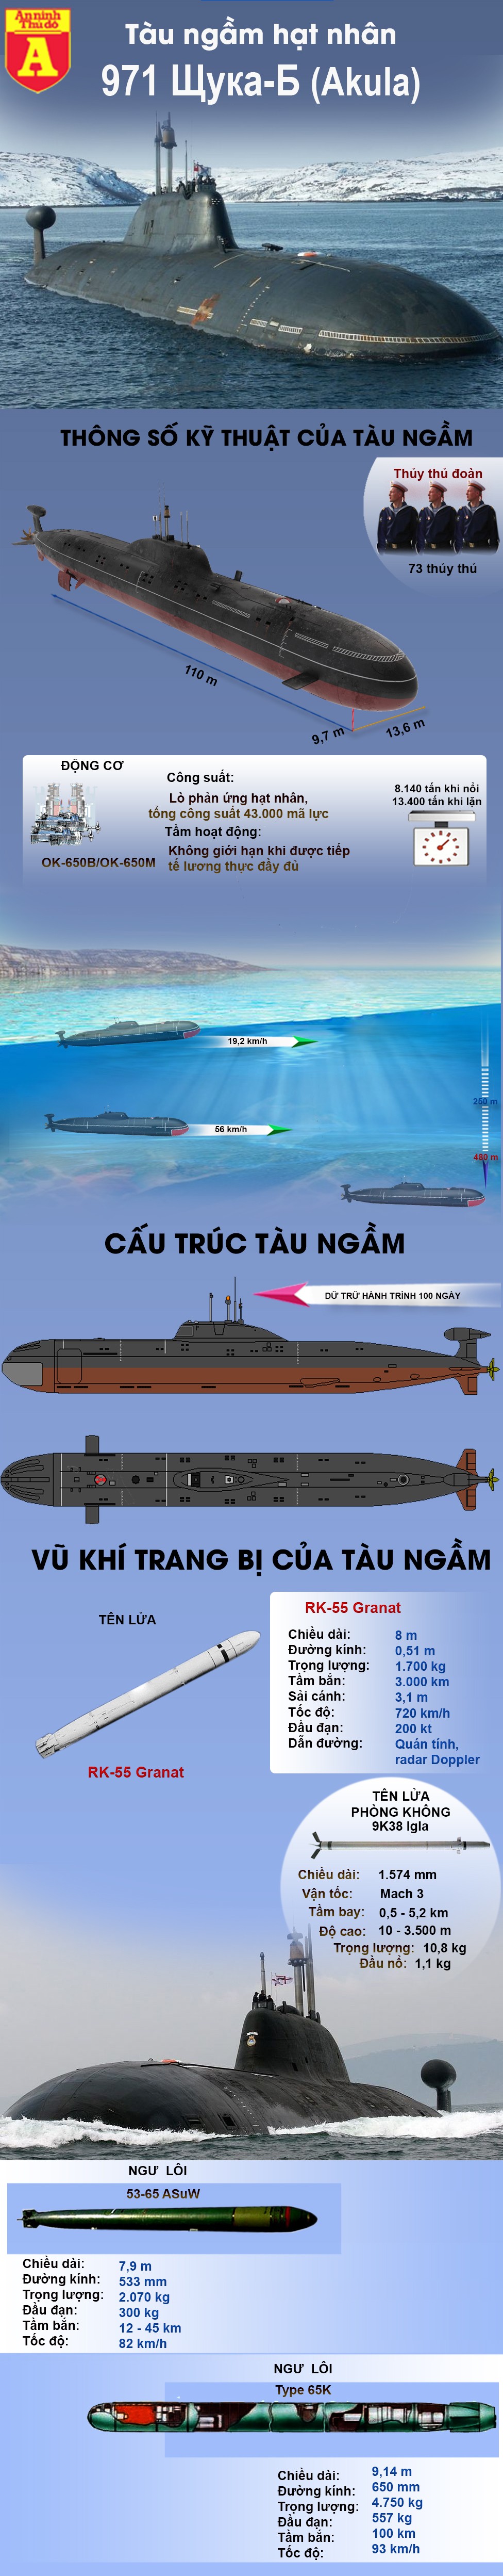 [Infographic] Đến không ai biết, đi không ai hay, tàu ngầm hạt nhân Nga khiến Mỹ lo lắng ảnh 2